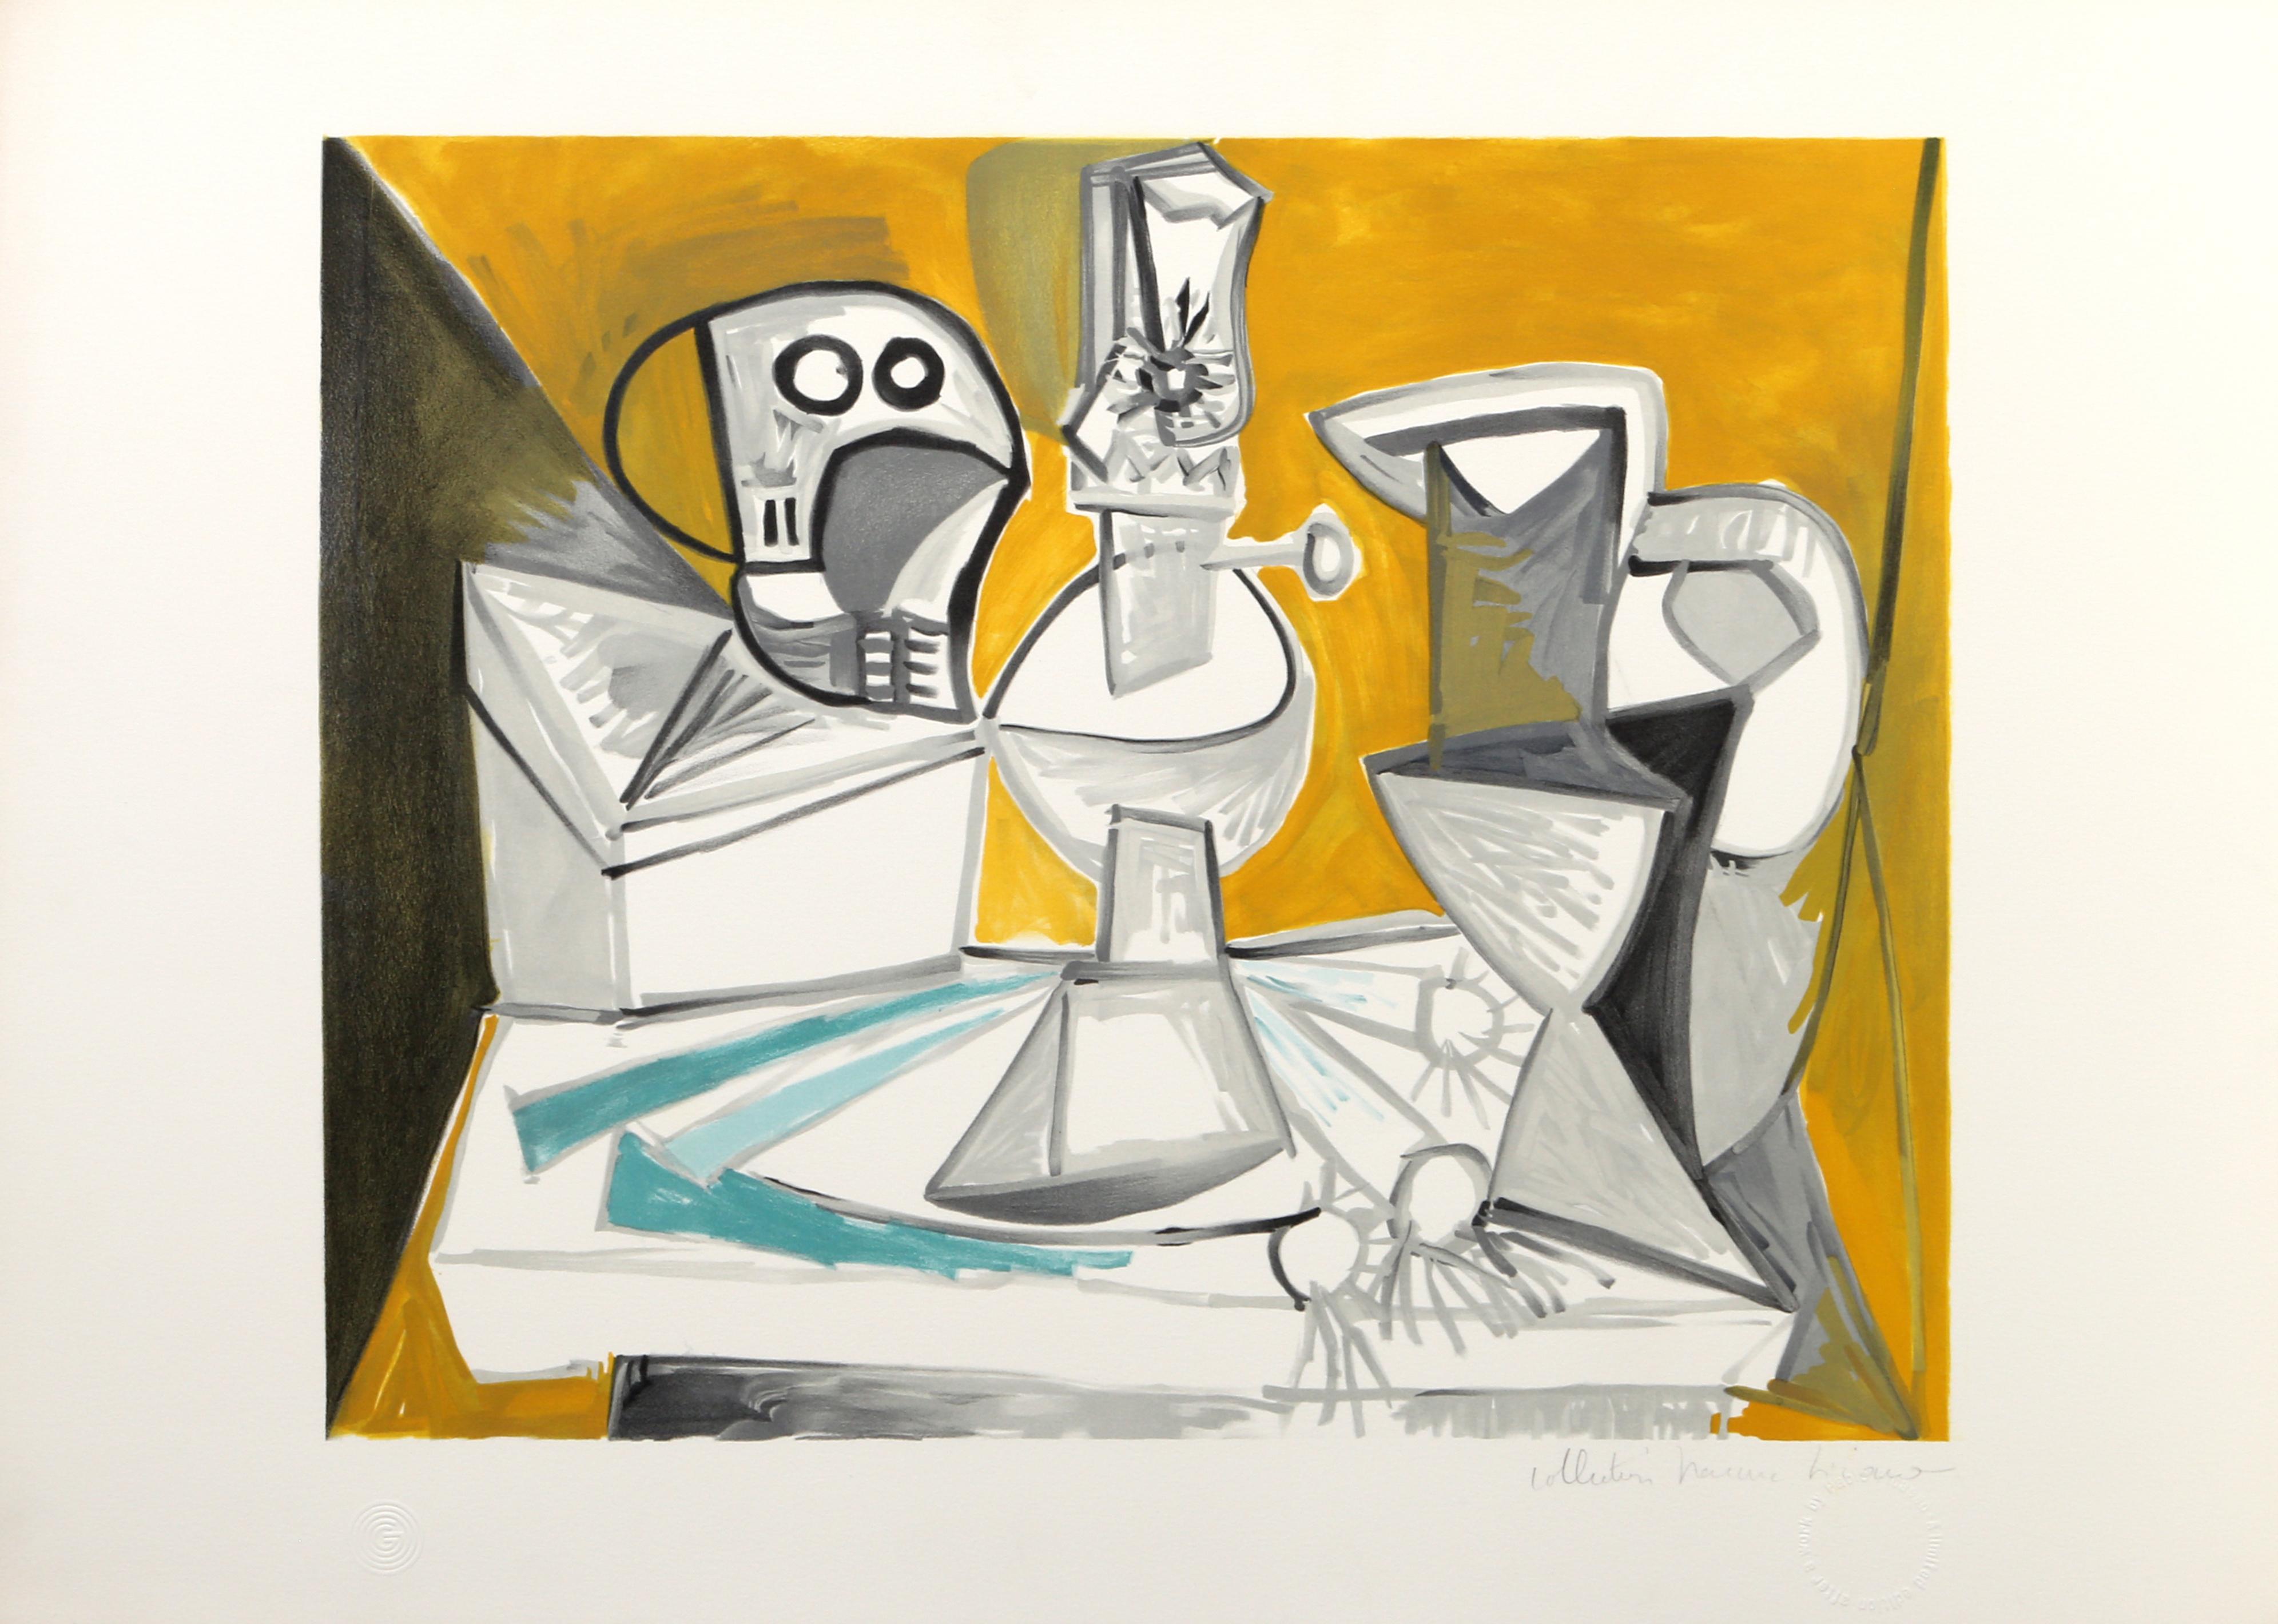 Disposée le long d'une table, la nature morte présentée dans cette estampe de Pablo Picasso est éclatante et lumineuse. Placées autour de la lampe au centre, les formes anguleuses du crâne, des poireaux et des cruches d'eau sont enduites de blanc et